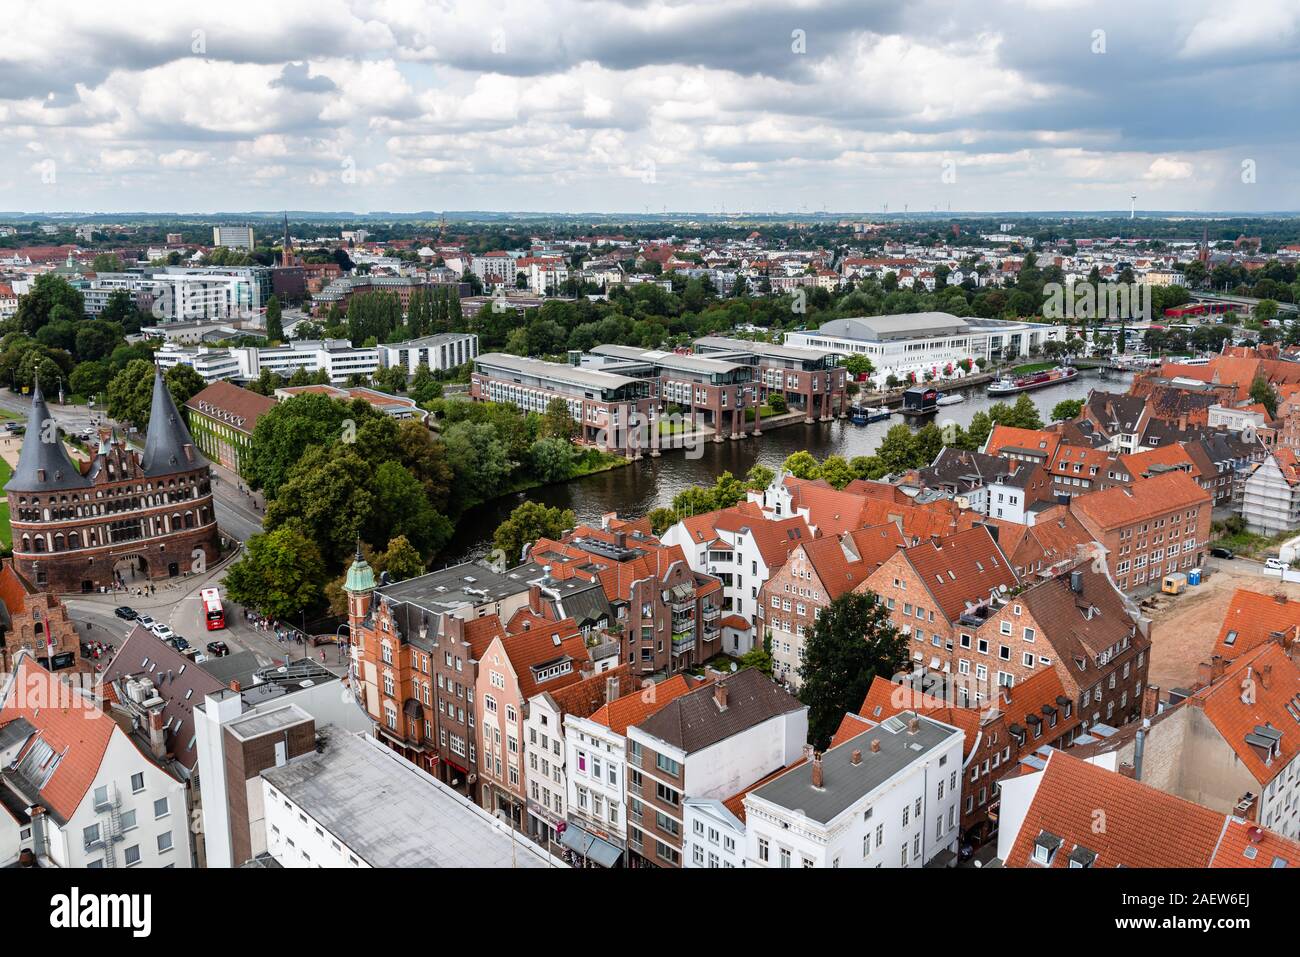 Lubeck, Alemania - 3 de agosto, 2019: Vista aérea del centro histórico de la ciudad hanseatica Foto de stock